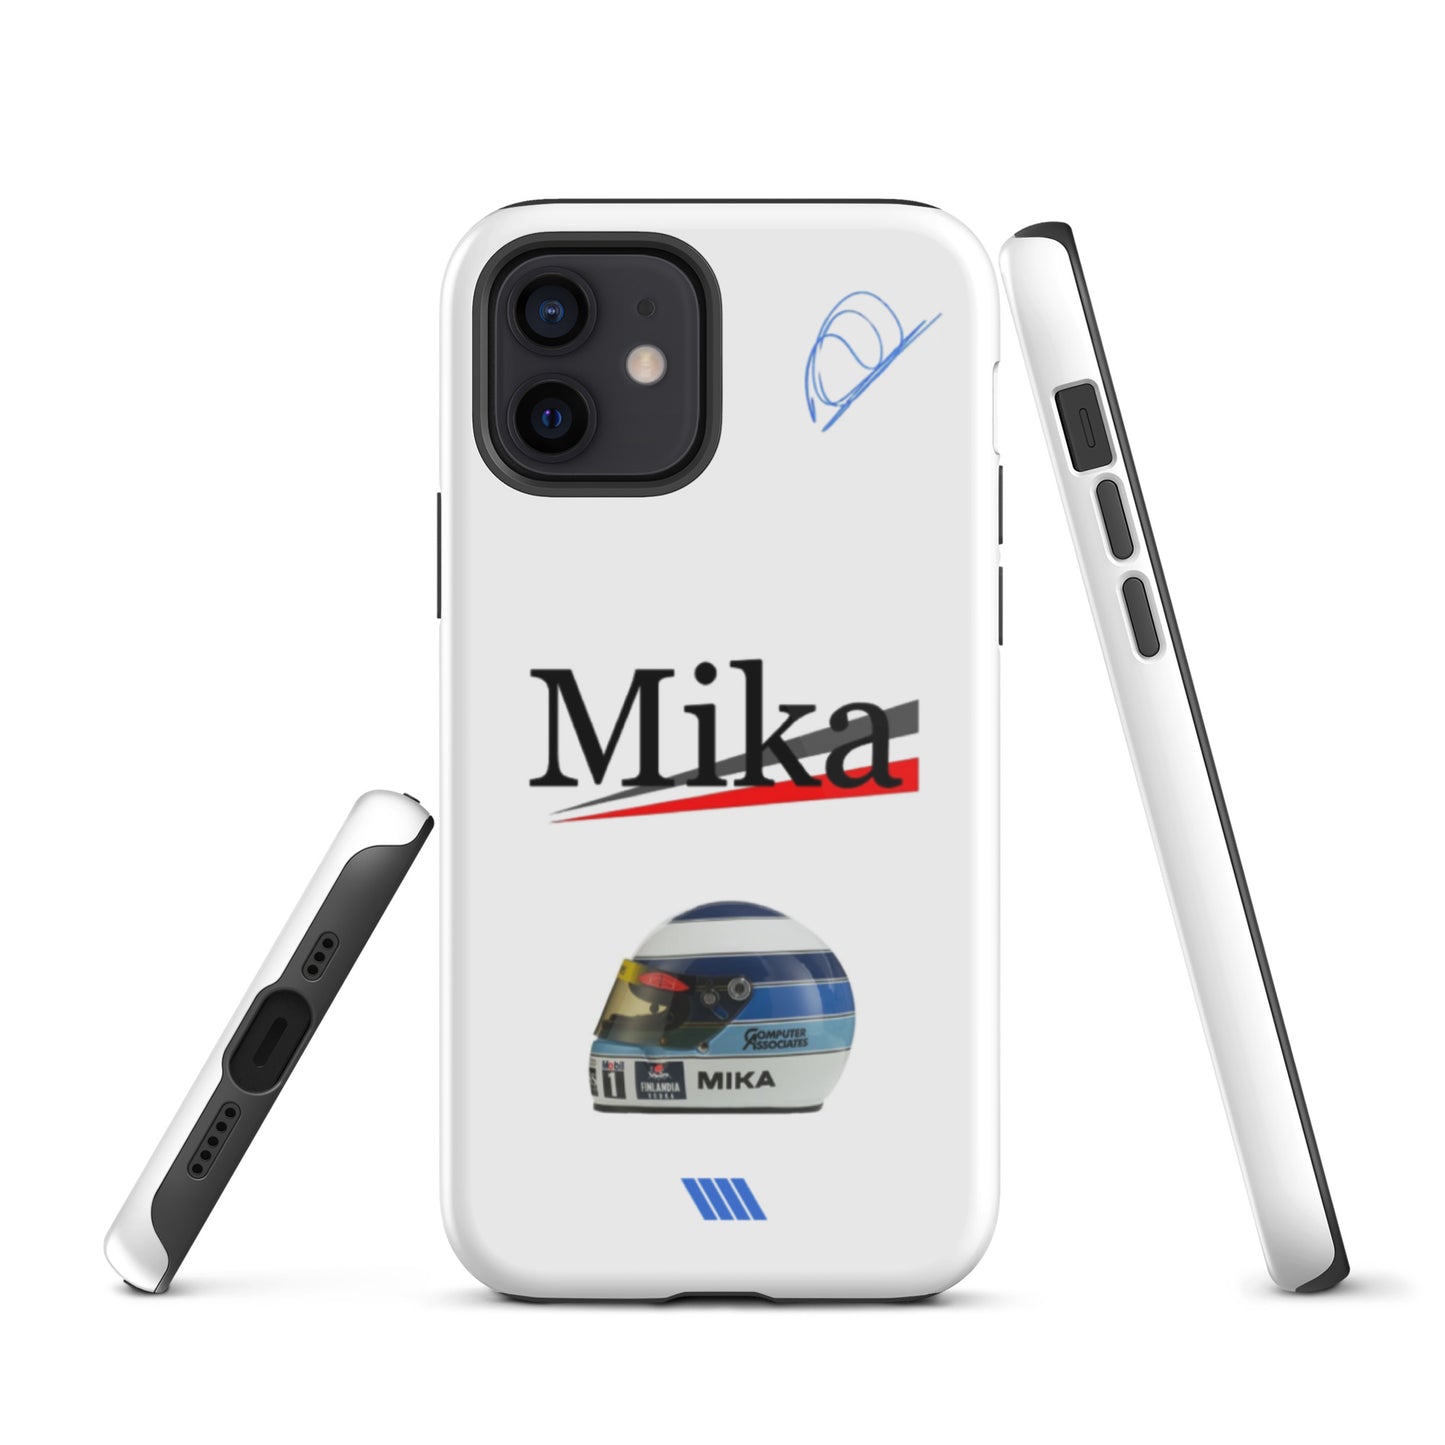 Mika Hakkinen Tough iPhone case